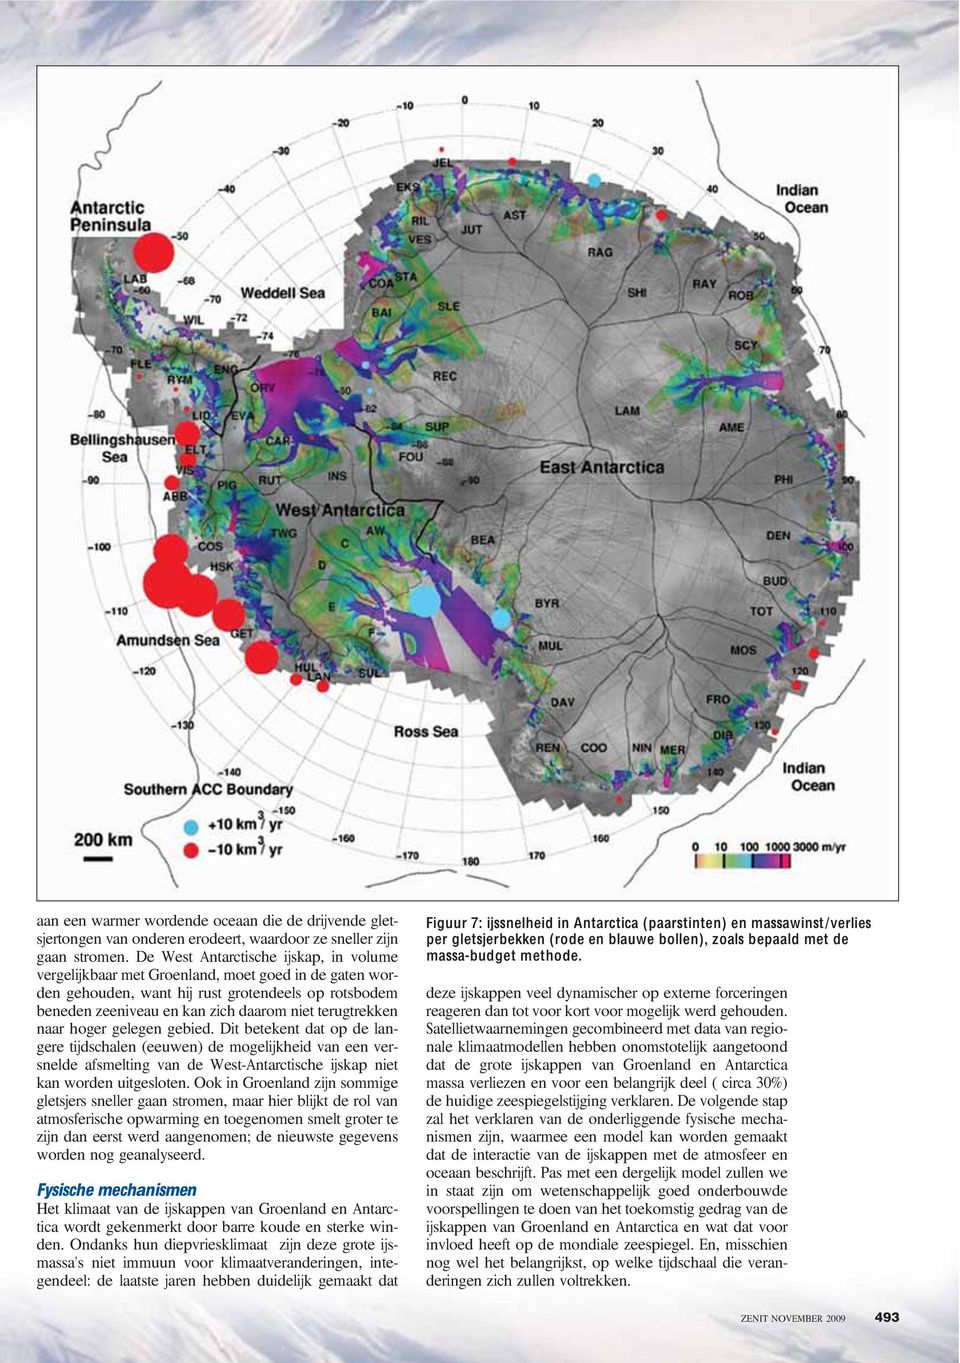 terugtrekken naar hoger gelegen gebied. Dit betekent dat op de langere tijdschalen (eeuwen) de mogelijkheid van een versnelde afsmelting van de West-Antarctische ijskap niet kan worden uitgesloten.